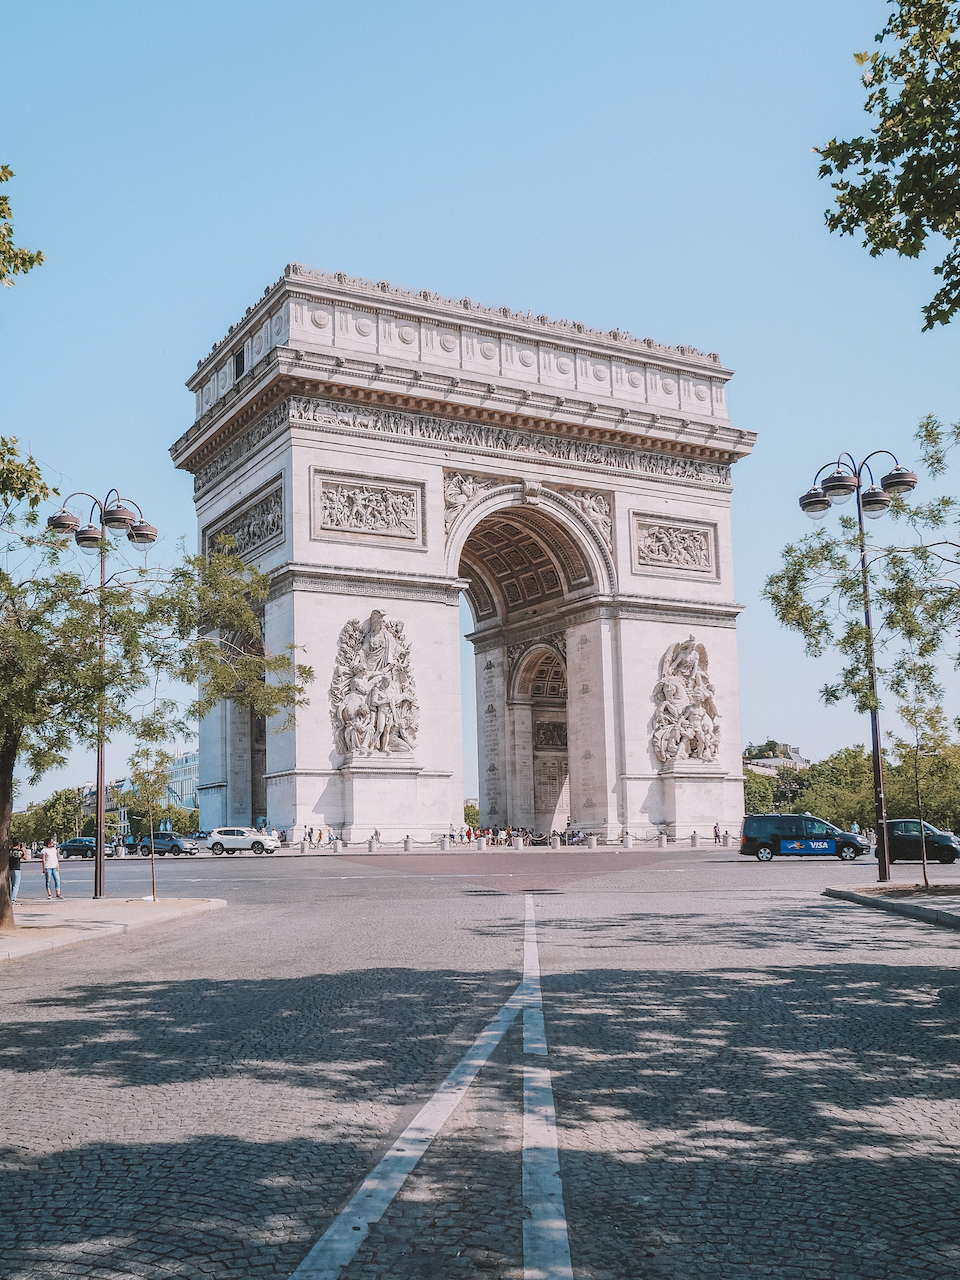 Stunning Arc-de-Triomphe - Paris - France